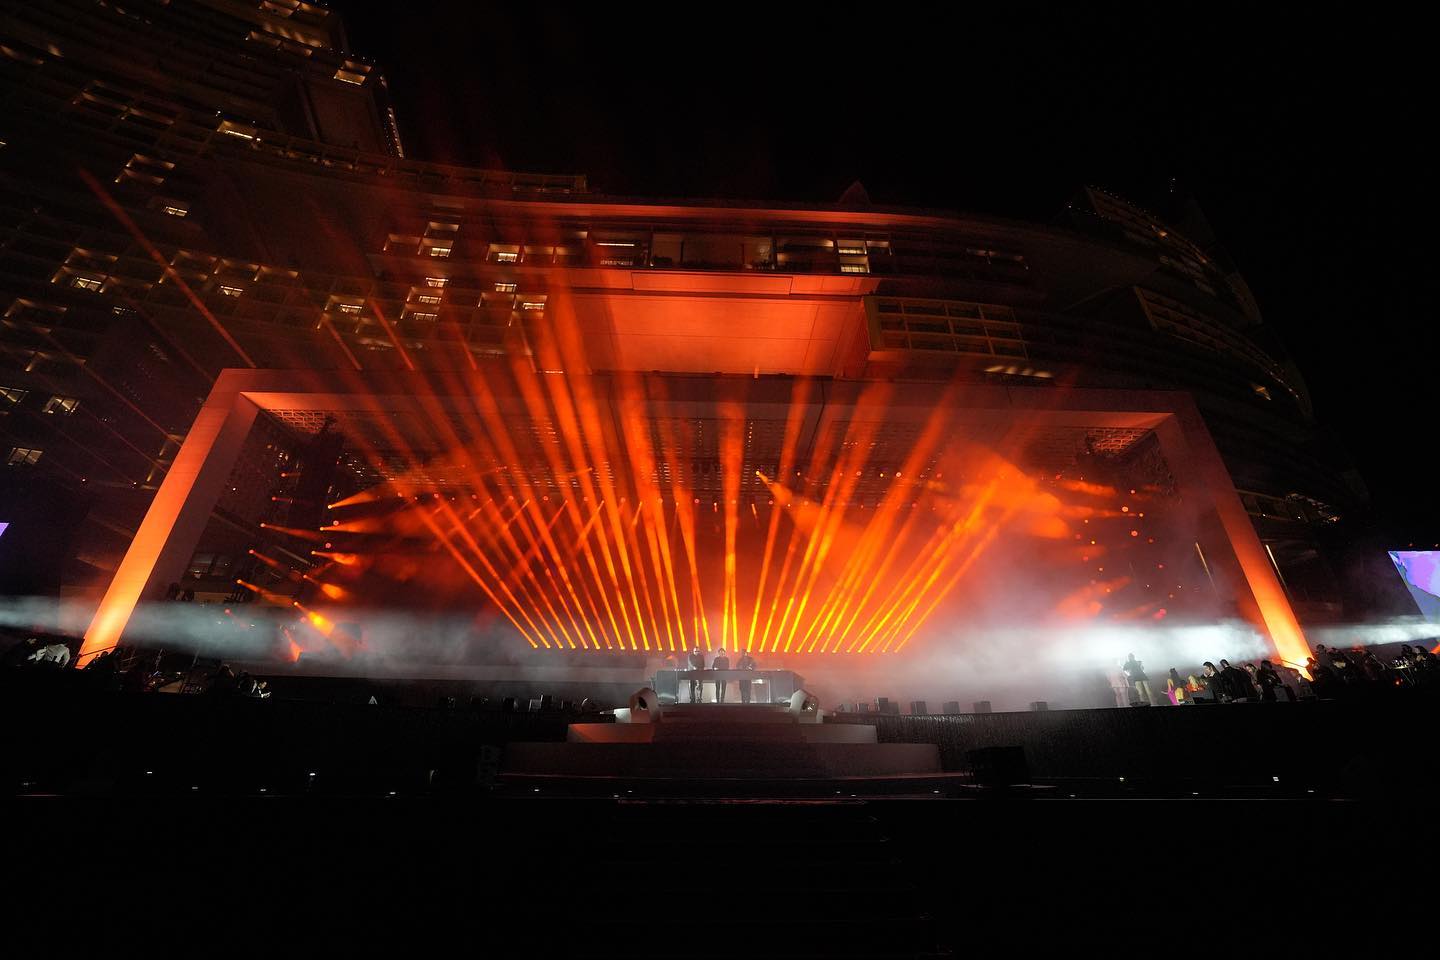 PRG lieferte eine schlüsselfertige technische Lösung für das dreitägige Spektakel, einschließlich einer gigantischen Beleuchtungsinstallation an der Fassade des Gebäudes sowie einer groß angelegten Audio-, Video- und Rigginganlage für das Atlantis Grand Reveal"-Event.